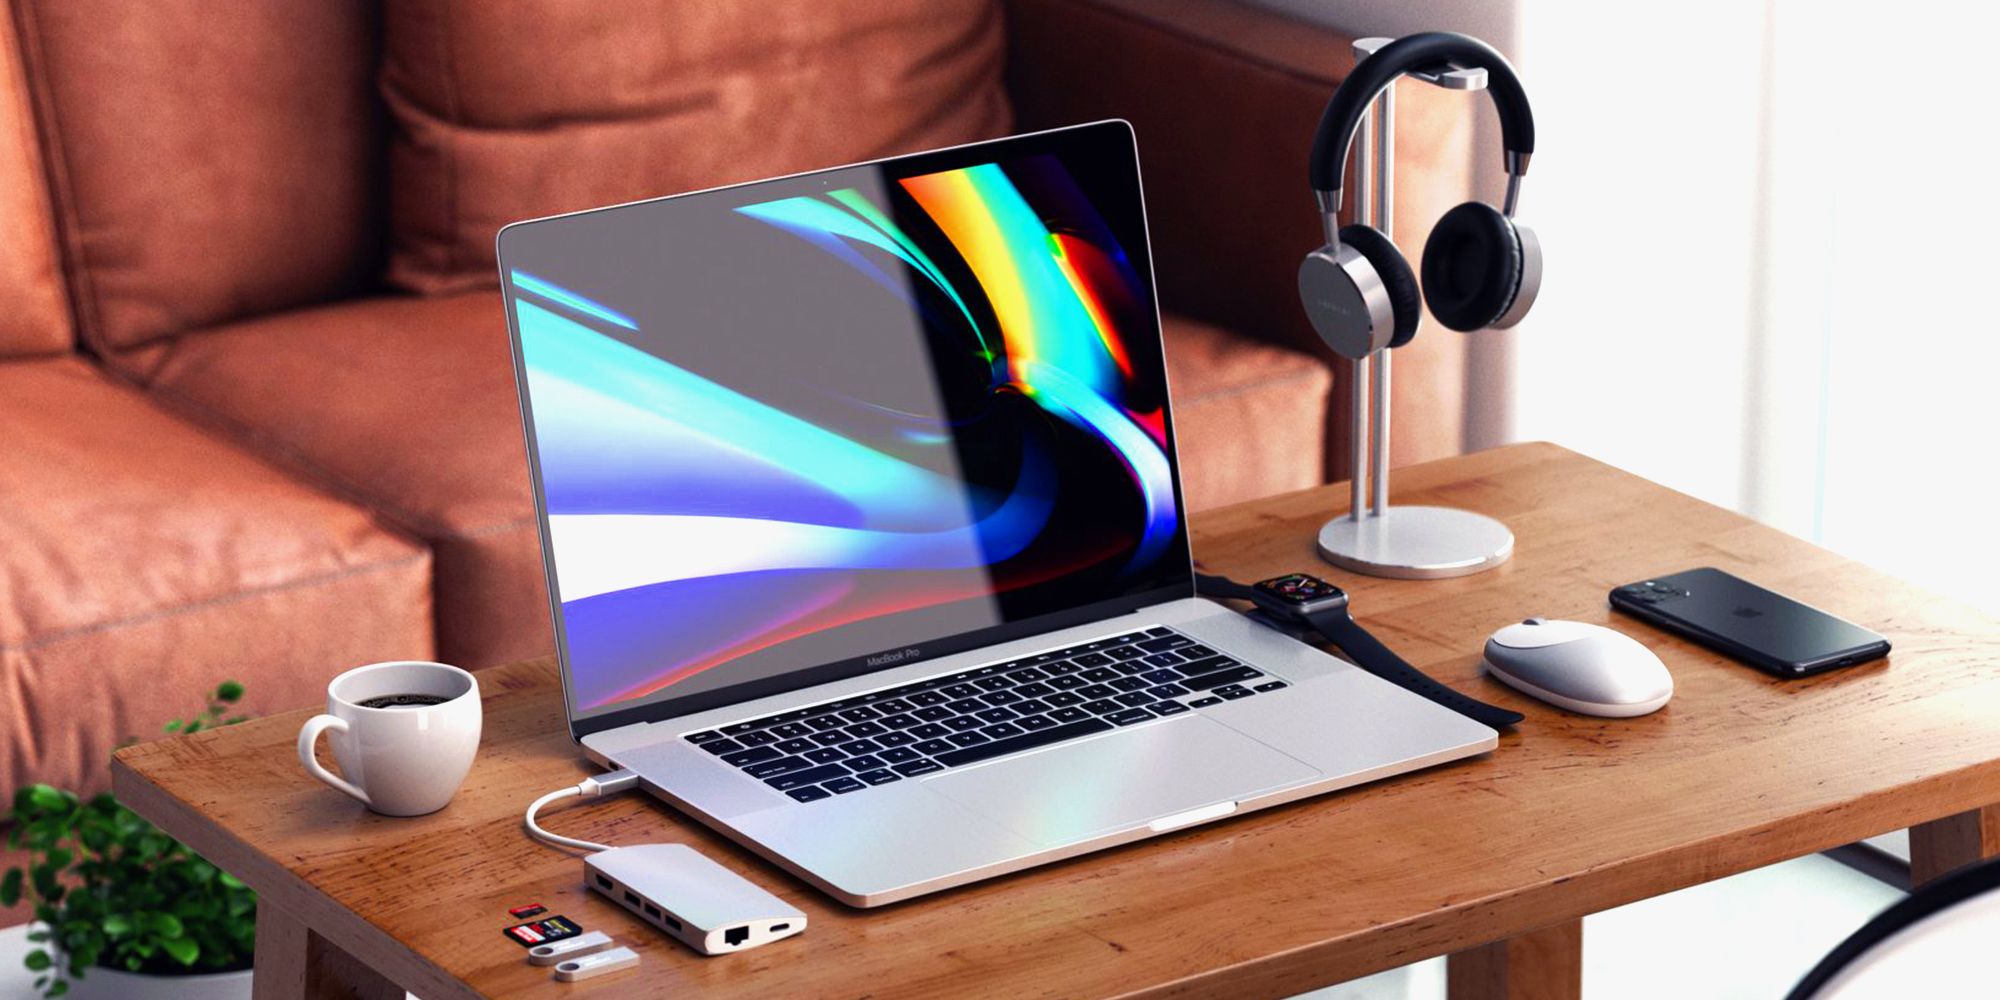 20 Best Apple Macbook Macbook Pro Accessories To Buy In 2020